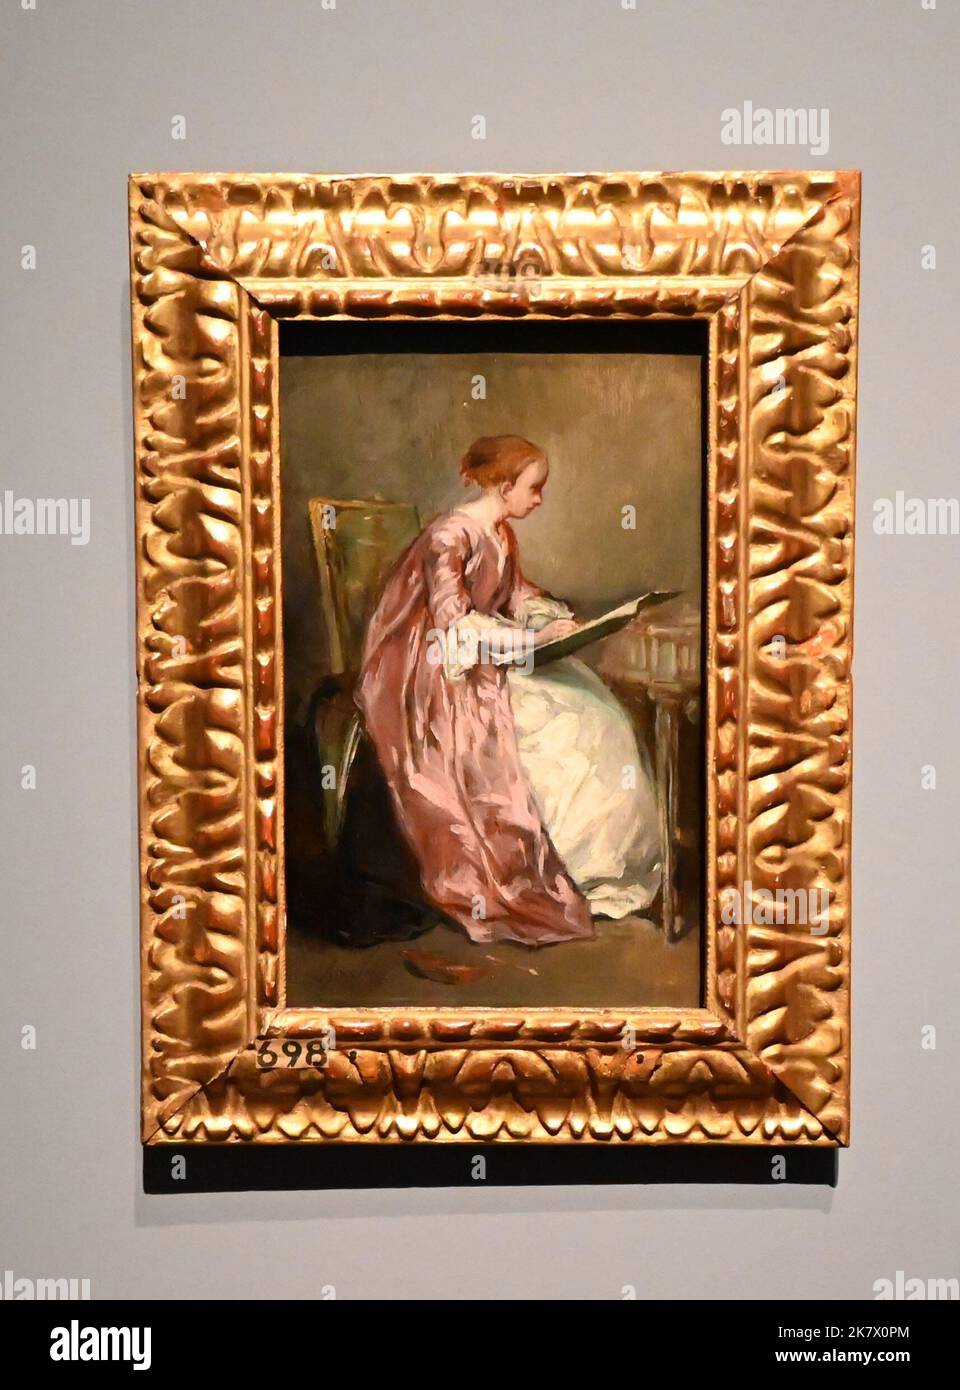 La prima mostra britannica ideata intorno al ritratto di Eva Gonzalès (1870) di Édouard Manet (1832-1883). Il dipinto, acquisito da Hugh Lane, è stato del 20th ° secolo considerato come il più famoso dipinto francese moderno nel Regno Unito e in Irlanda. Questa è la prima di una nuova serie di mostre "Discover" che verranno allestite nella Sunley Room della National Gallery per esplorare i dipinti più noti della collezione attraverso una lente contemporanea. La mostra prende come obiettivo il ritratto di Manet di Eva Gonzalès (1849–1883), con l’obiettivo di presentare nuove prospettive sulle donne artisti ... Foto Stock